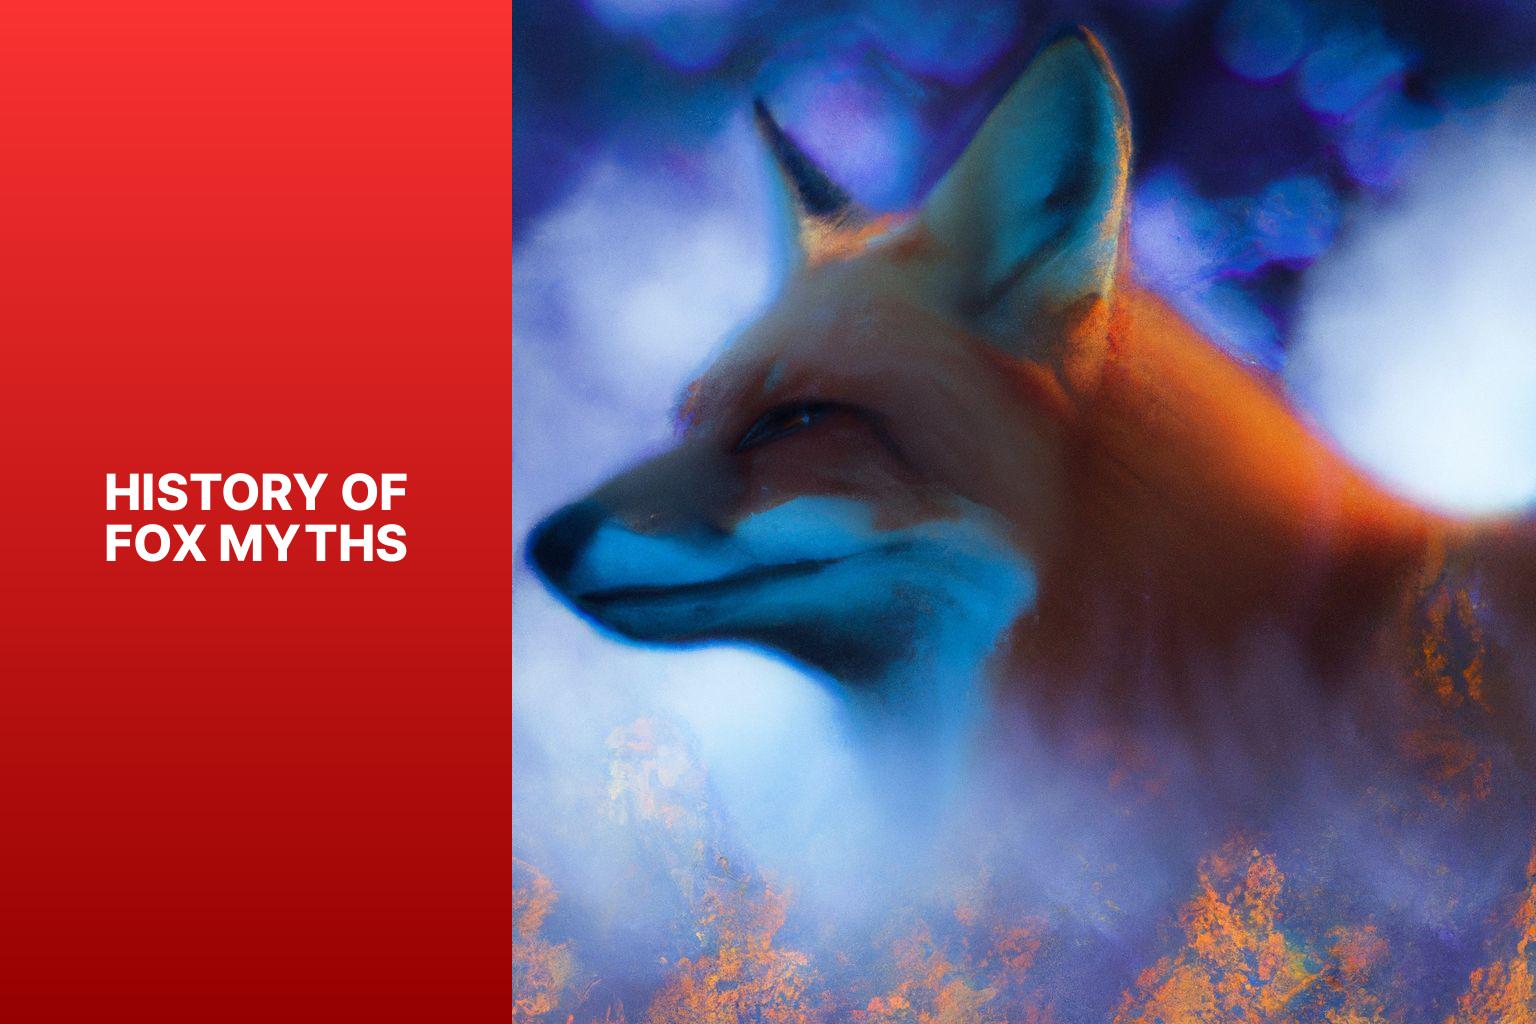 History of Fox Myths - Fox Myths in Spiritualism 